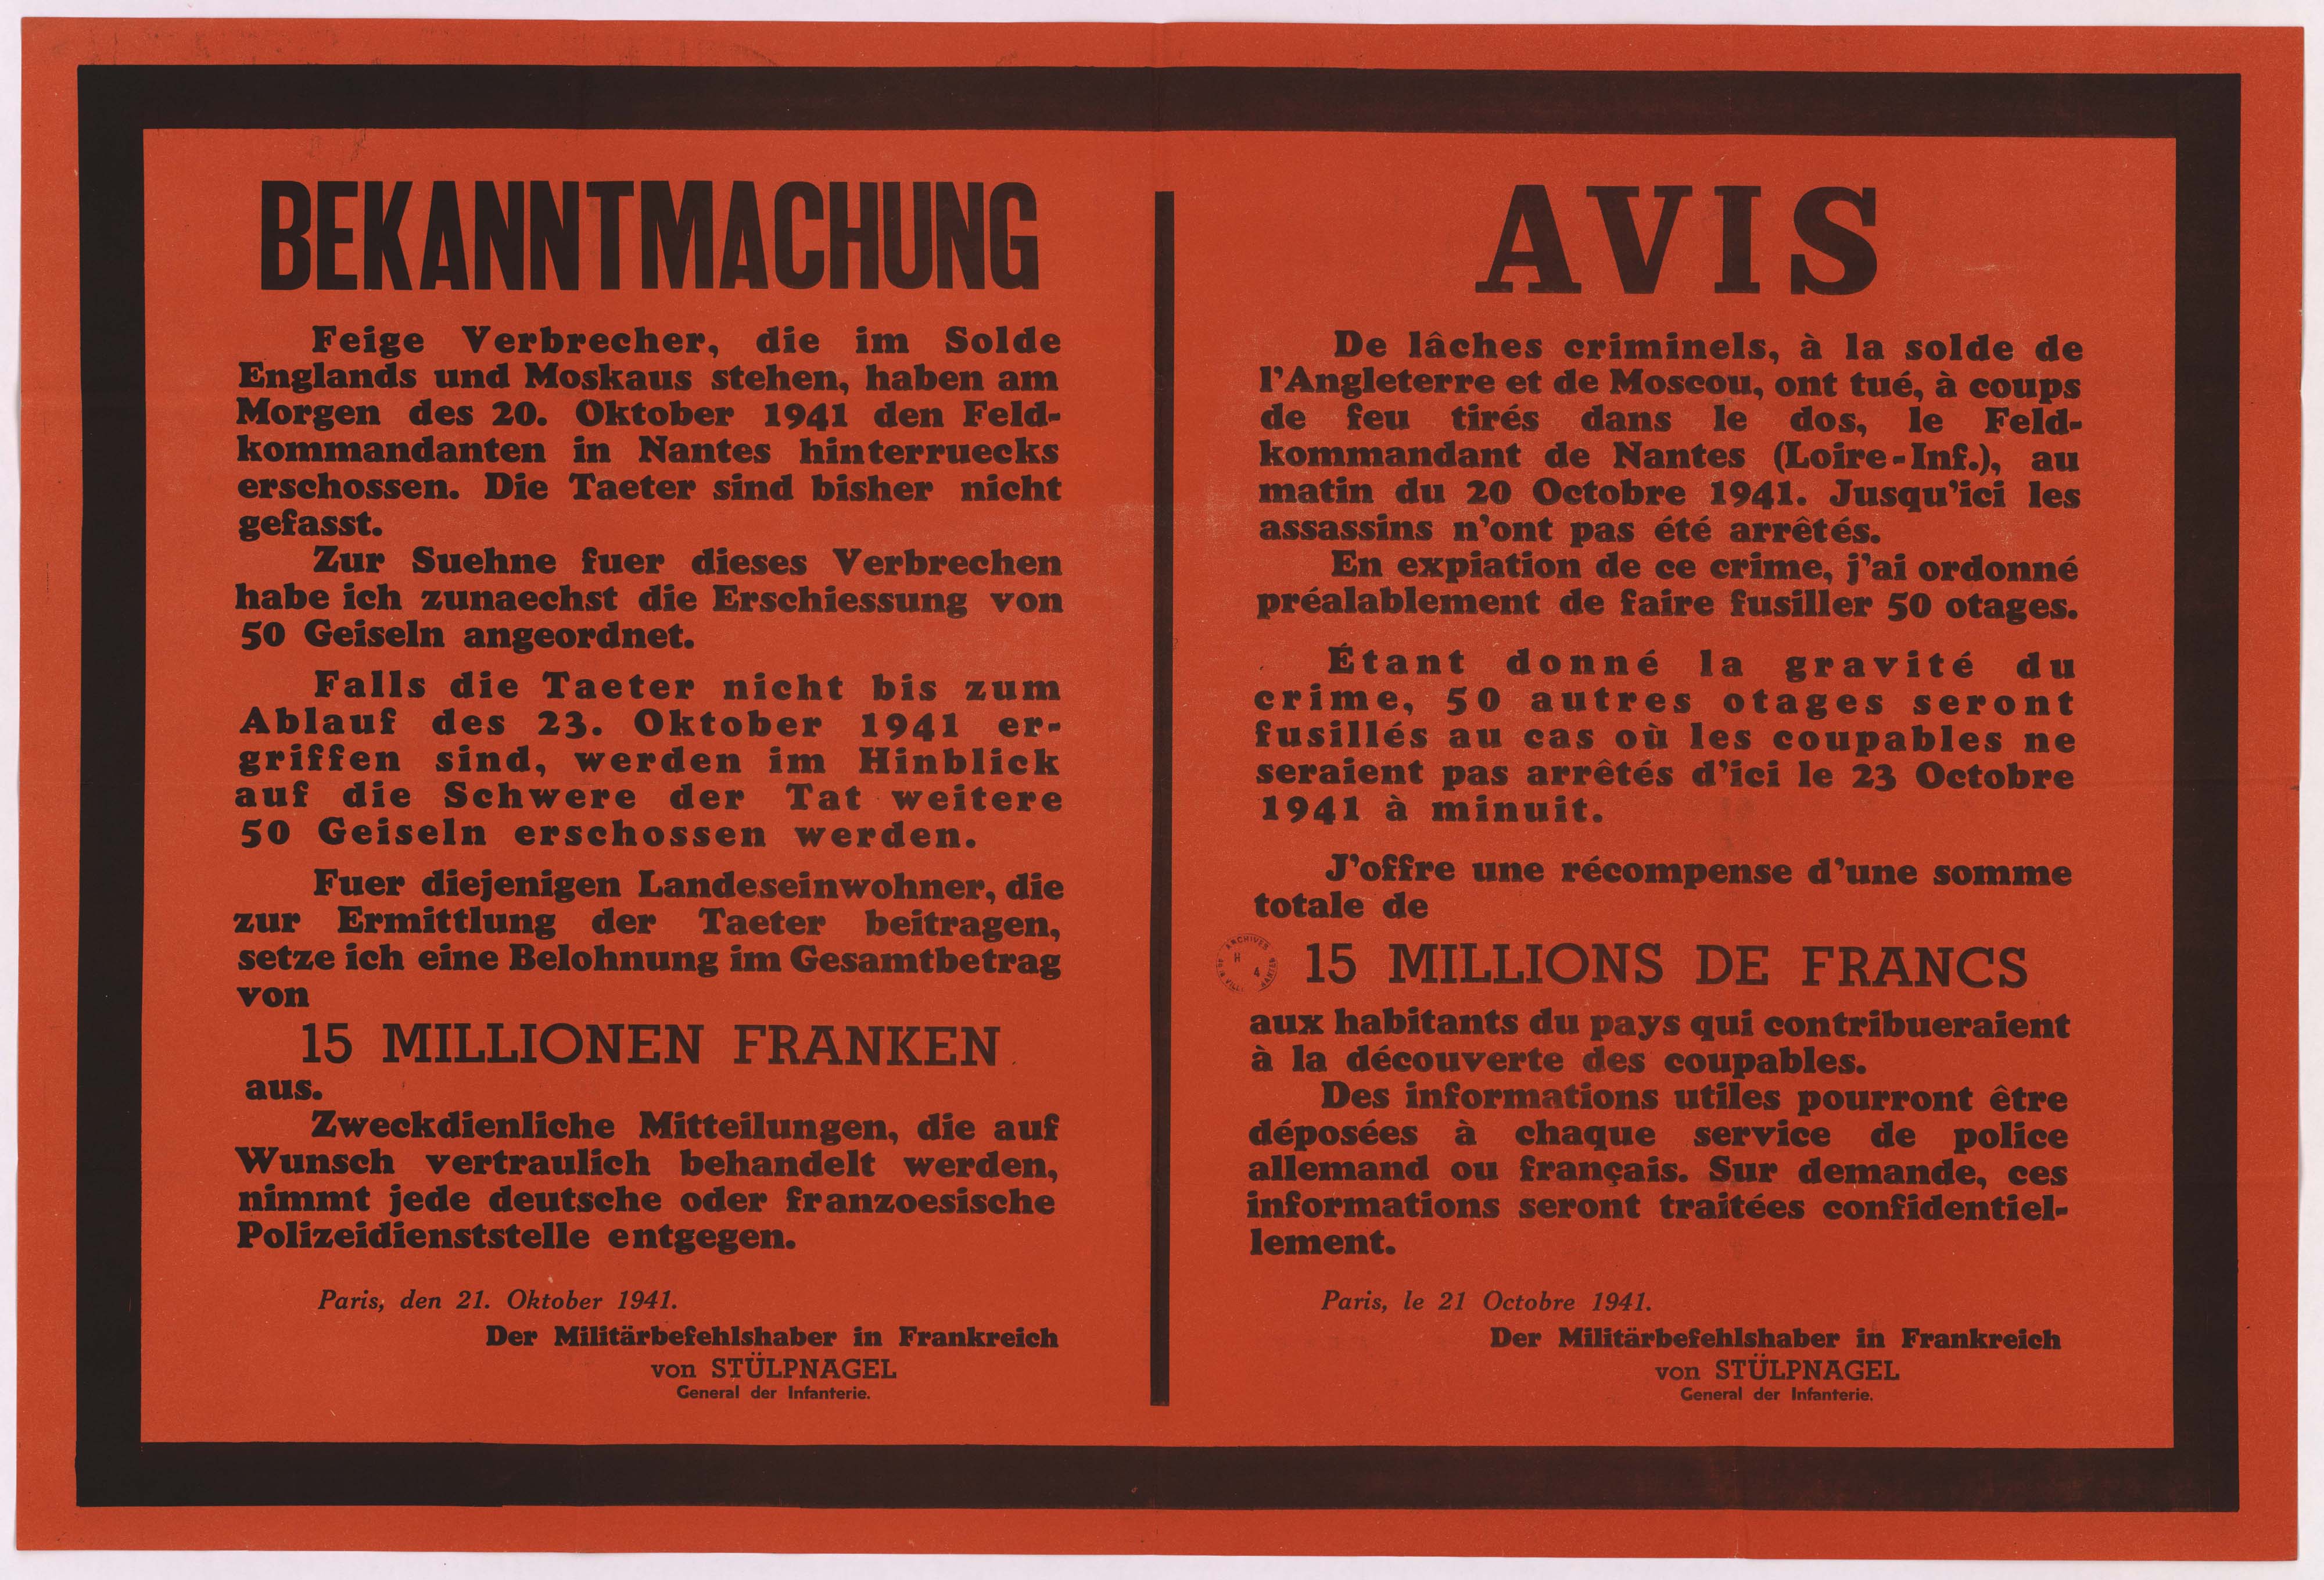 Avis des autorités allemandes du 21 octobre 1941 annonçant des représailles après l'assassinat du Feldkommandant de Nantes et l'exécution de 50 otages (6Fi6954)